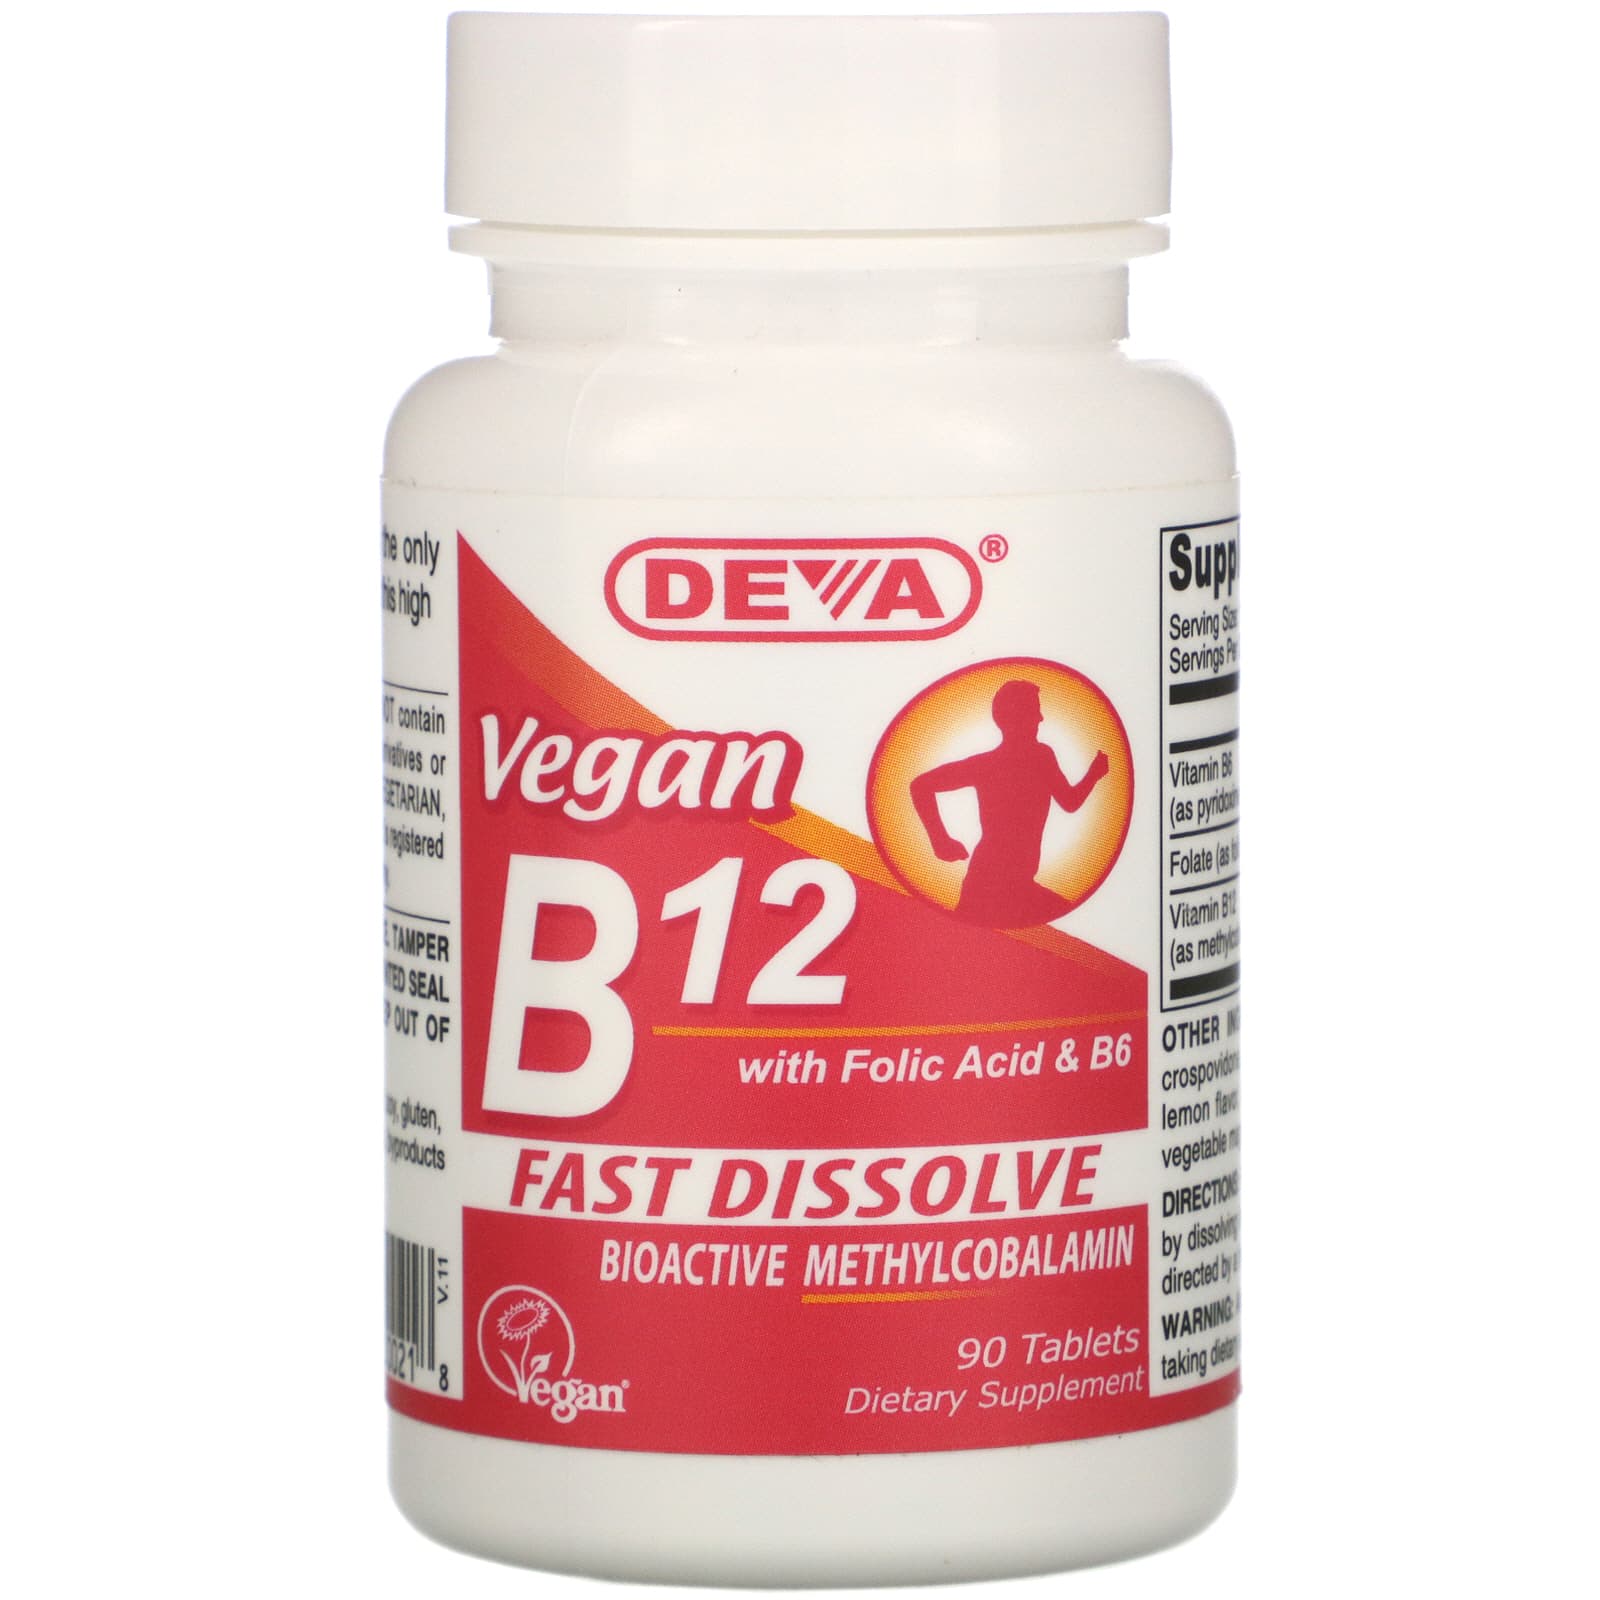 Б 12 фолиевая. Метилкобаламин витамин в12. Deva, Vegan b12 with folic acid & b6, fast-dissolve, 90 Tablets. Витамин b12 препараты. Витамин b12 в таблетках.